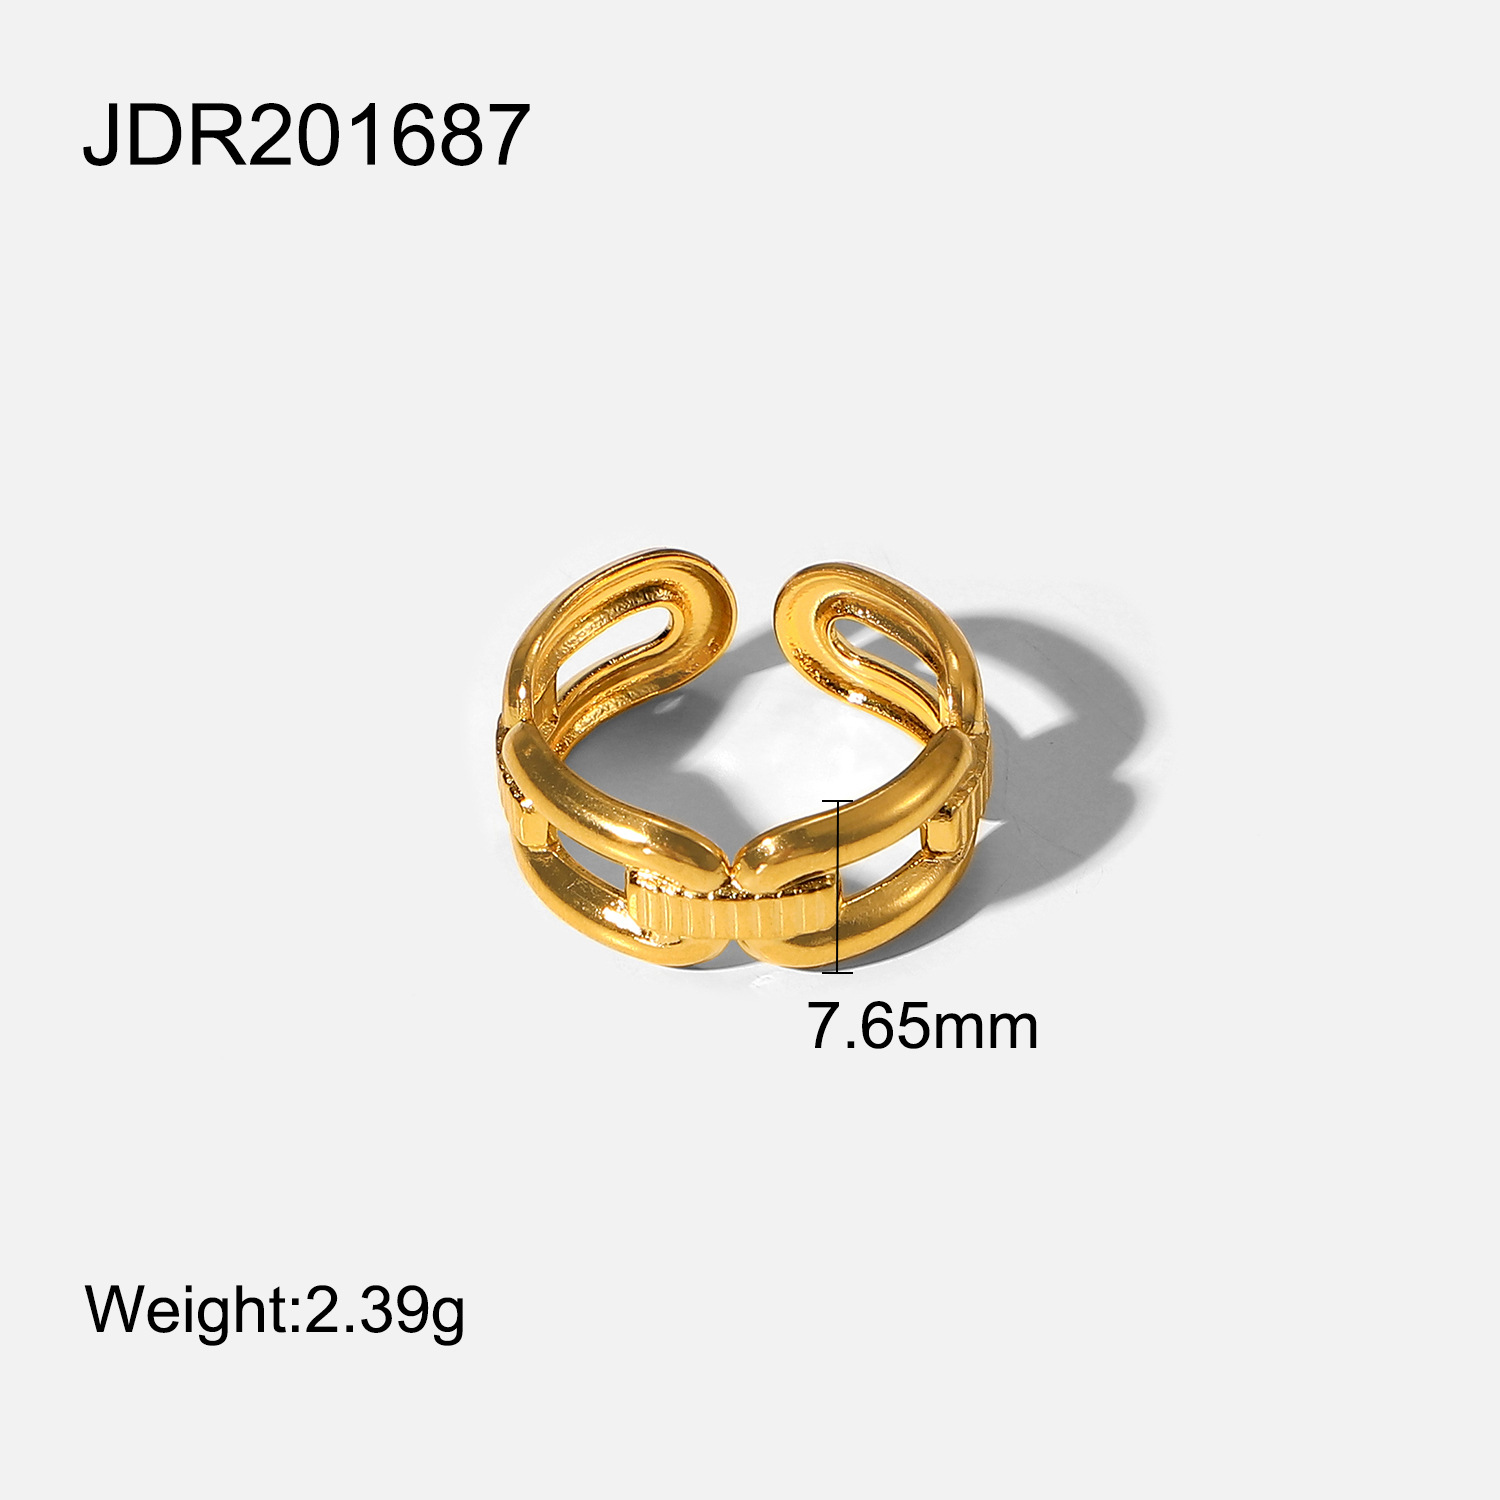 2:JDR201687